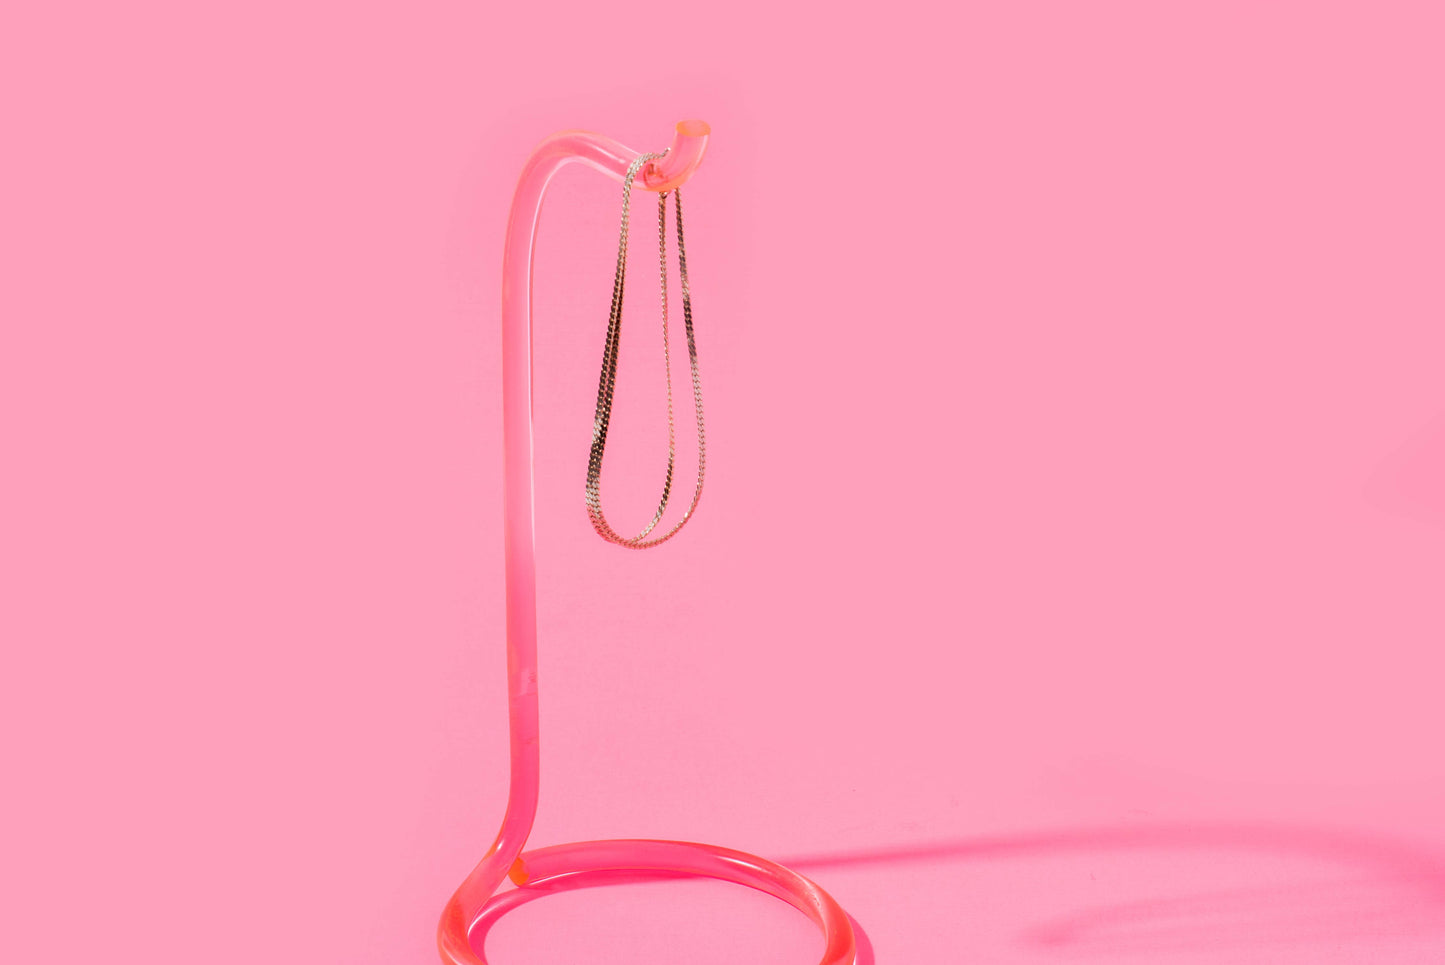 Display Hook - Pink